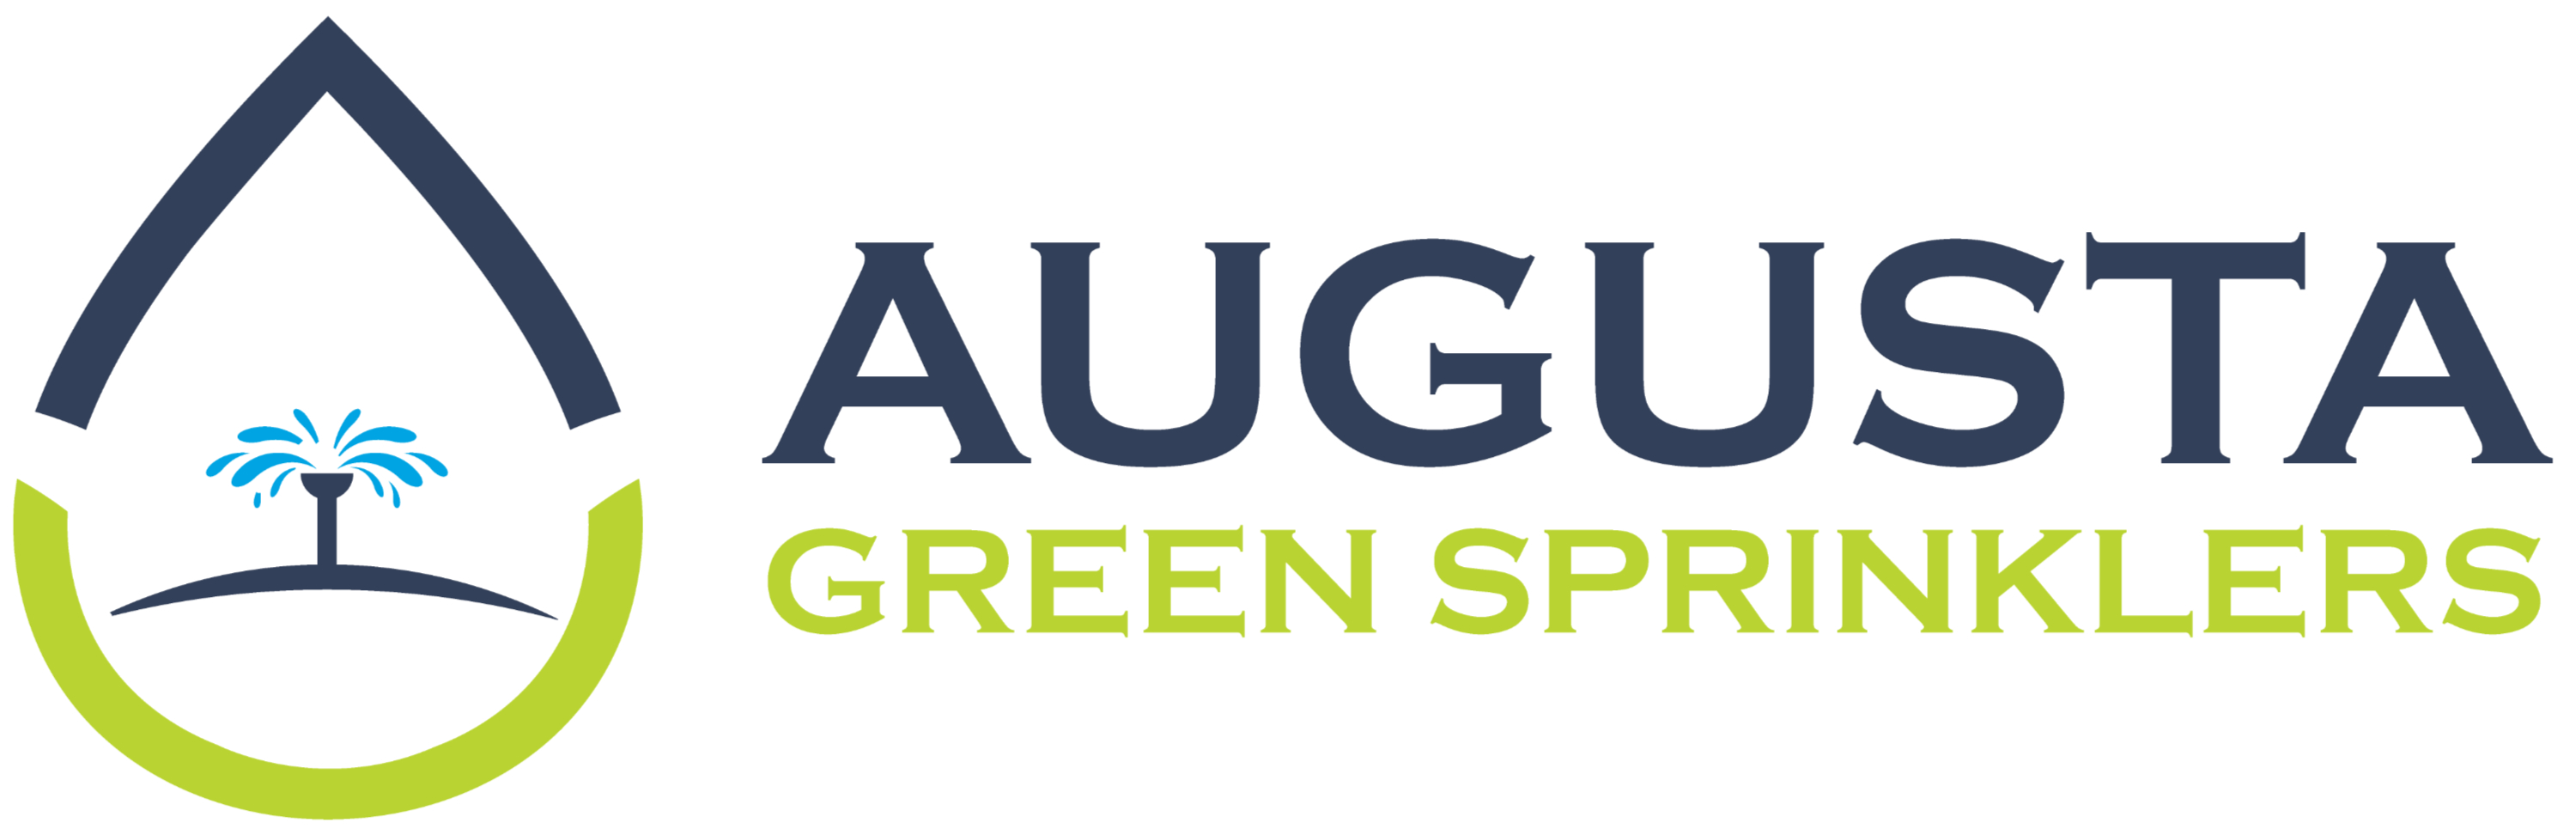 Augusta Green Sprinklers